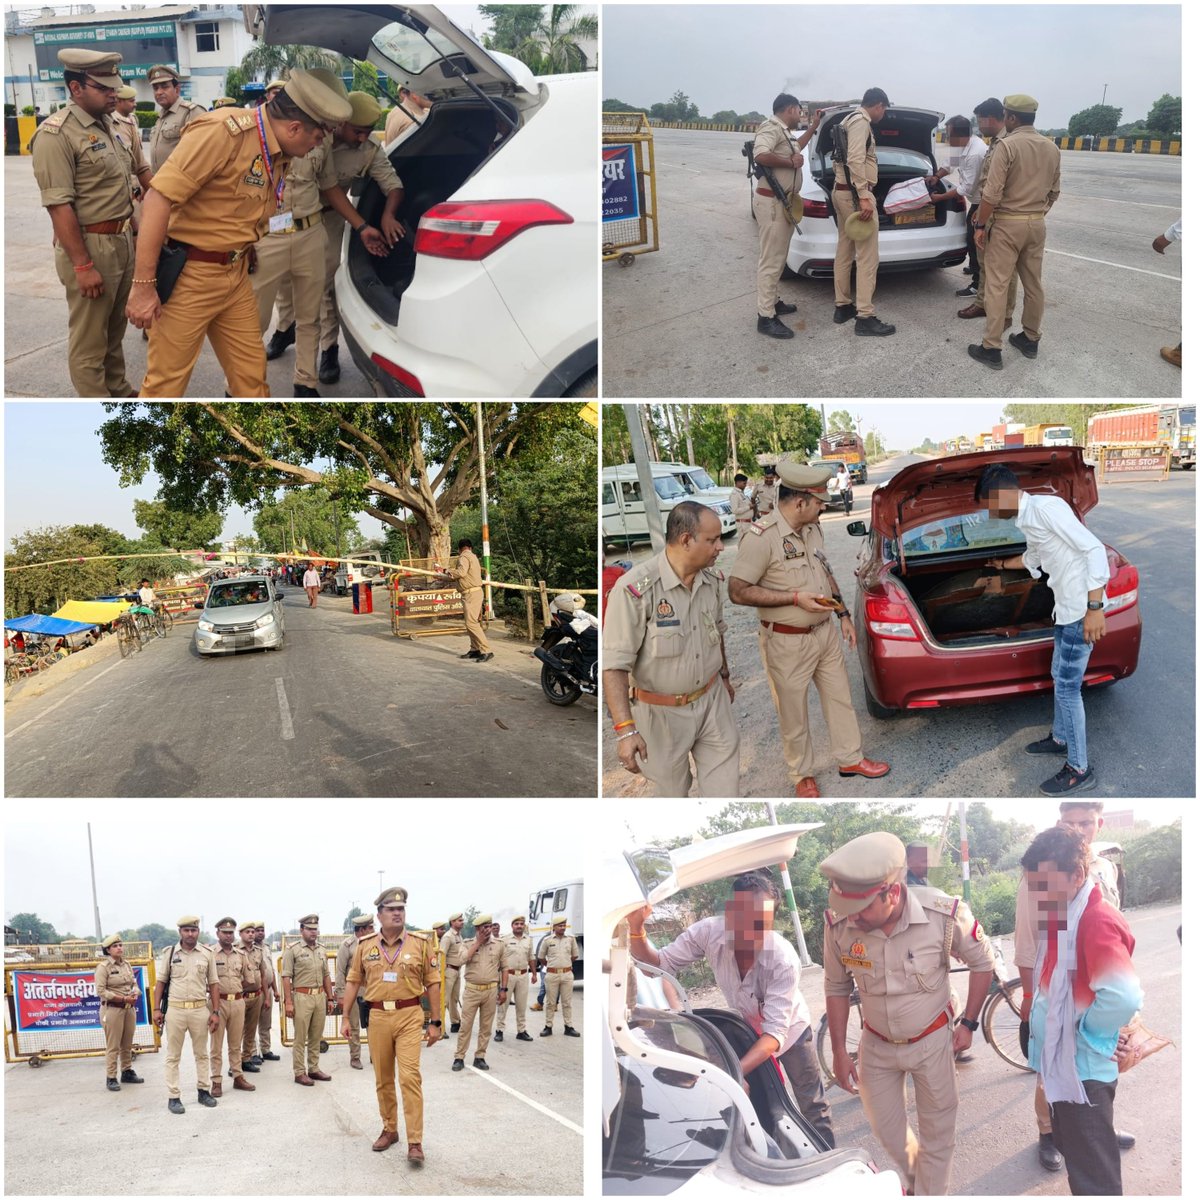 #Auraiya_Police पुलिस अधीक्षक औरैया @ipsCharuNigam के निर्देशन में सुरक्षा व्यवस्था के दृष्टिगत जनपद औरैया के समस्त थानों द्वारा अपने-अपने क्षेत्रों में पड़ने वाले मुख्य चौराहो/स्थानो पर भारी पुलिस बल के साथ सघन वाहन चेकिंग अभियान चलाकर संदिग्ध व्यक्ति/वाहन की चेकिंग की गयी।